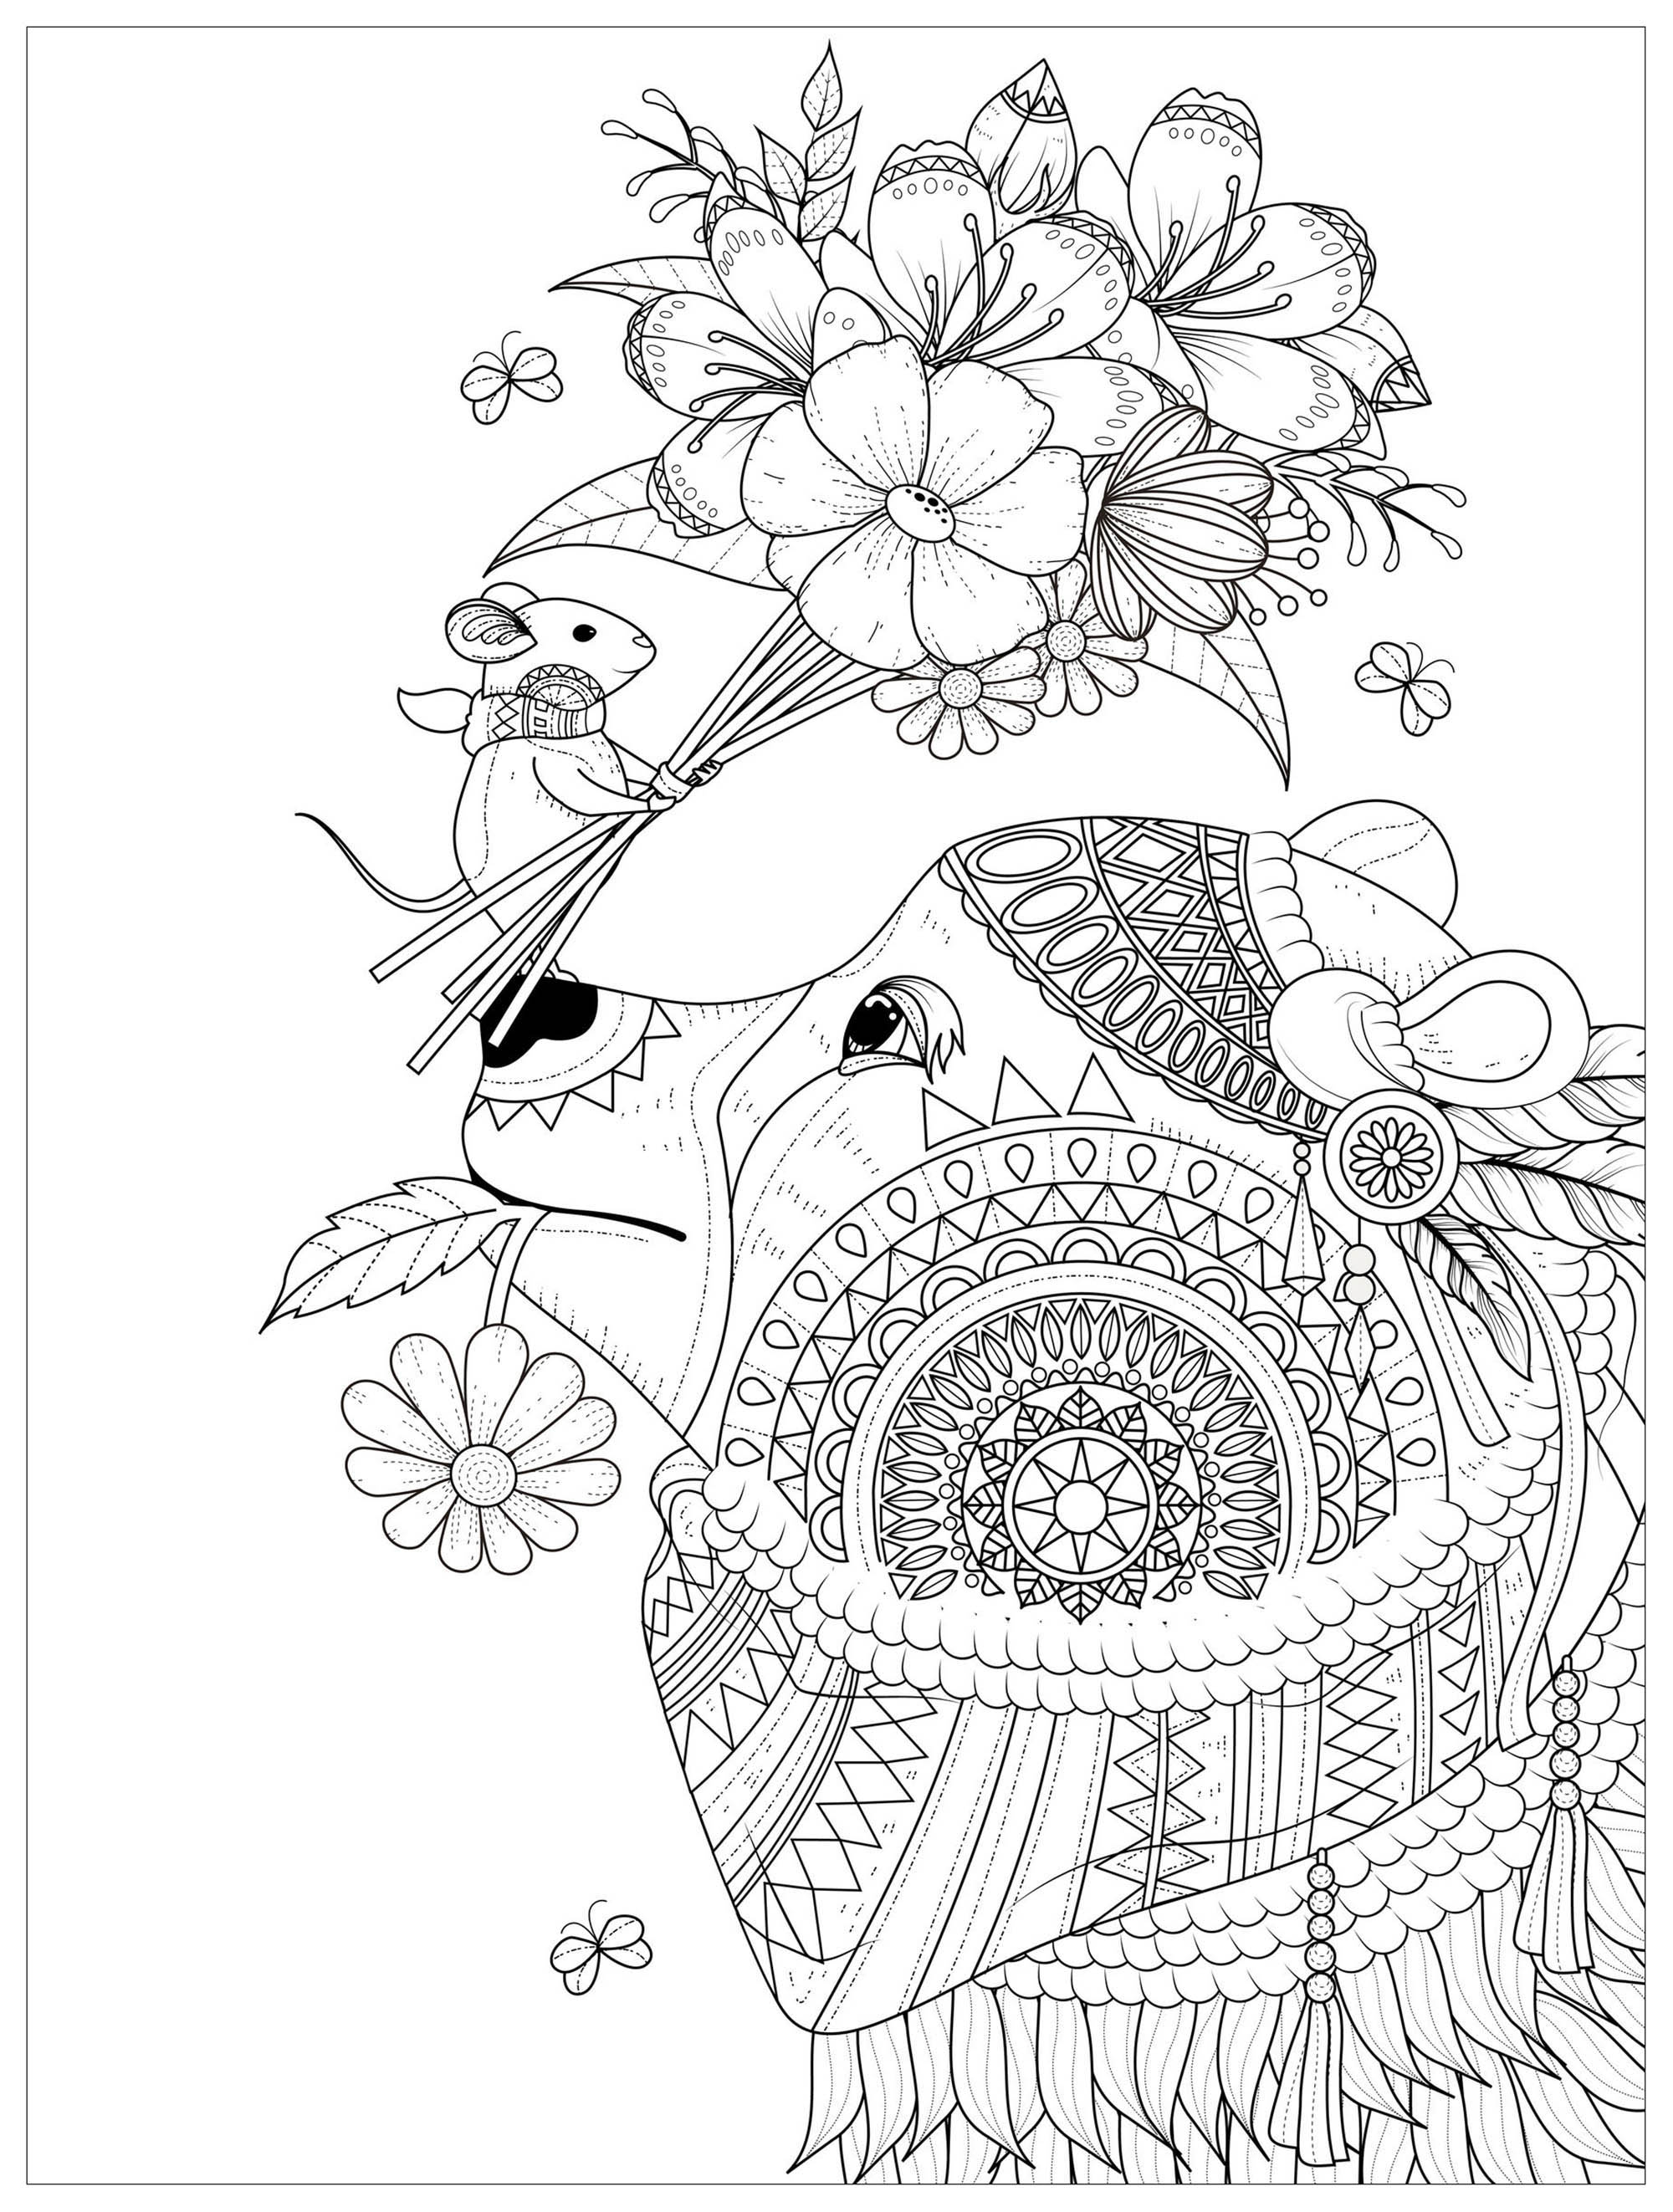 Topolino che offre un bel mazzo di fiori a un orso. Incredibili disegni eleganti da colorare, Fonte : 123rf   Artista : Kchung